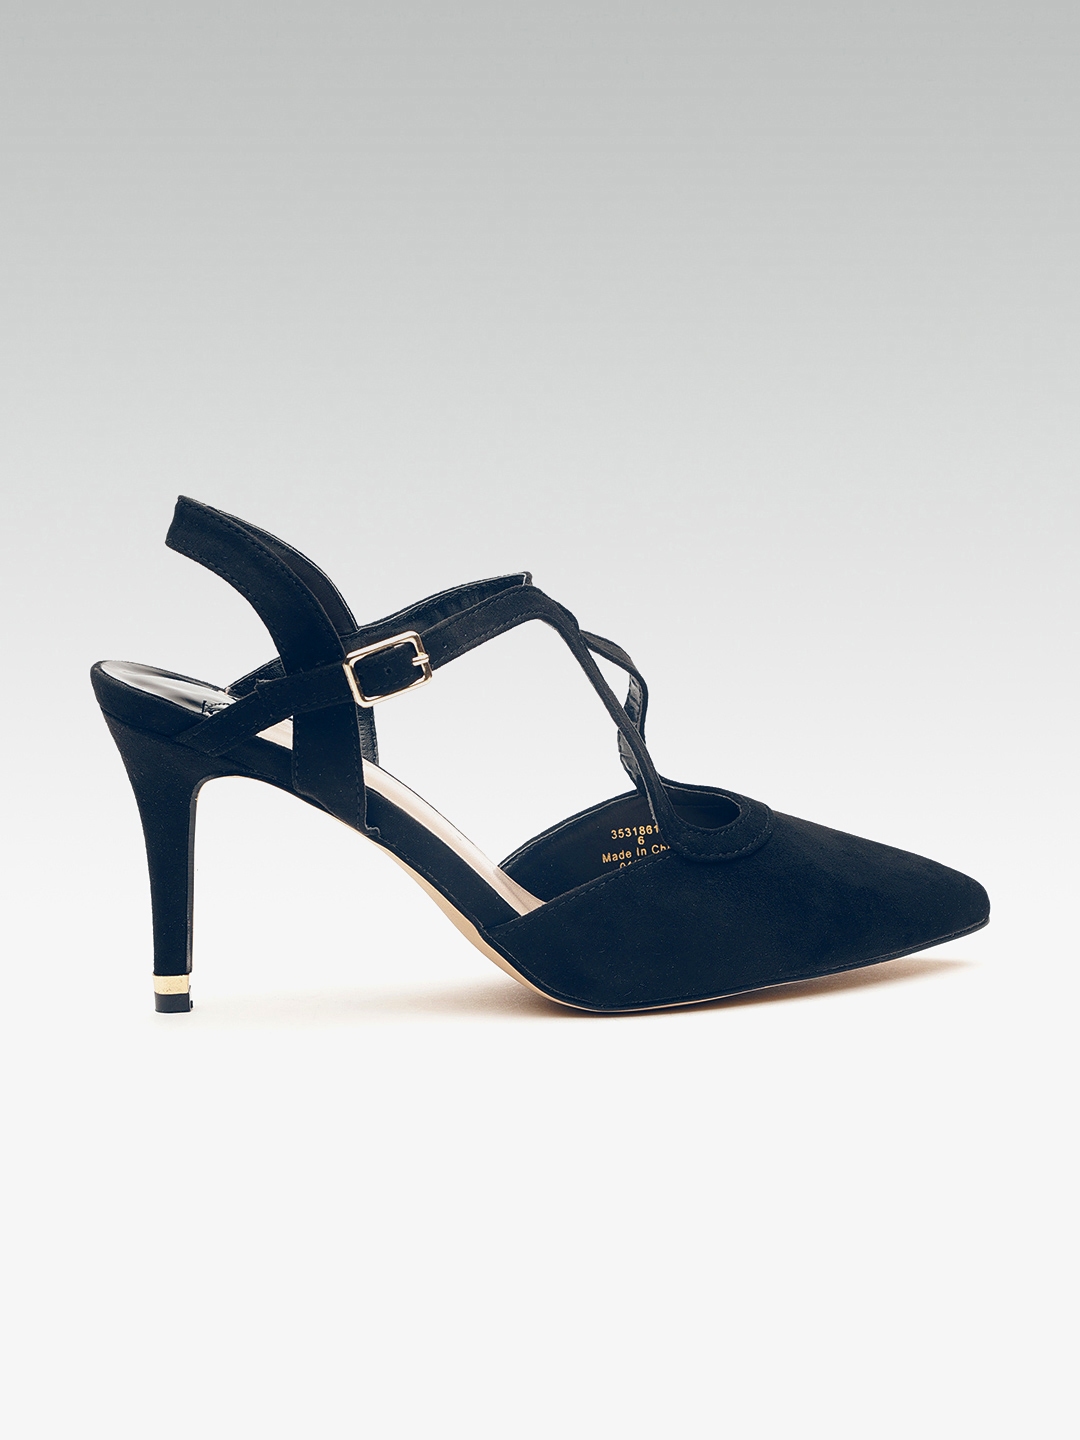 dorothy perkins navy heels